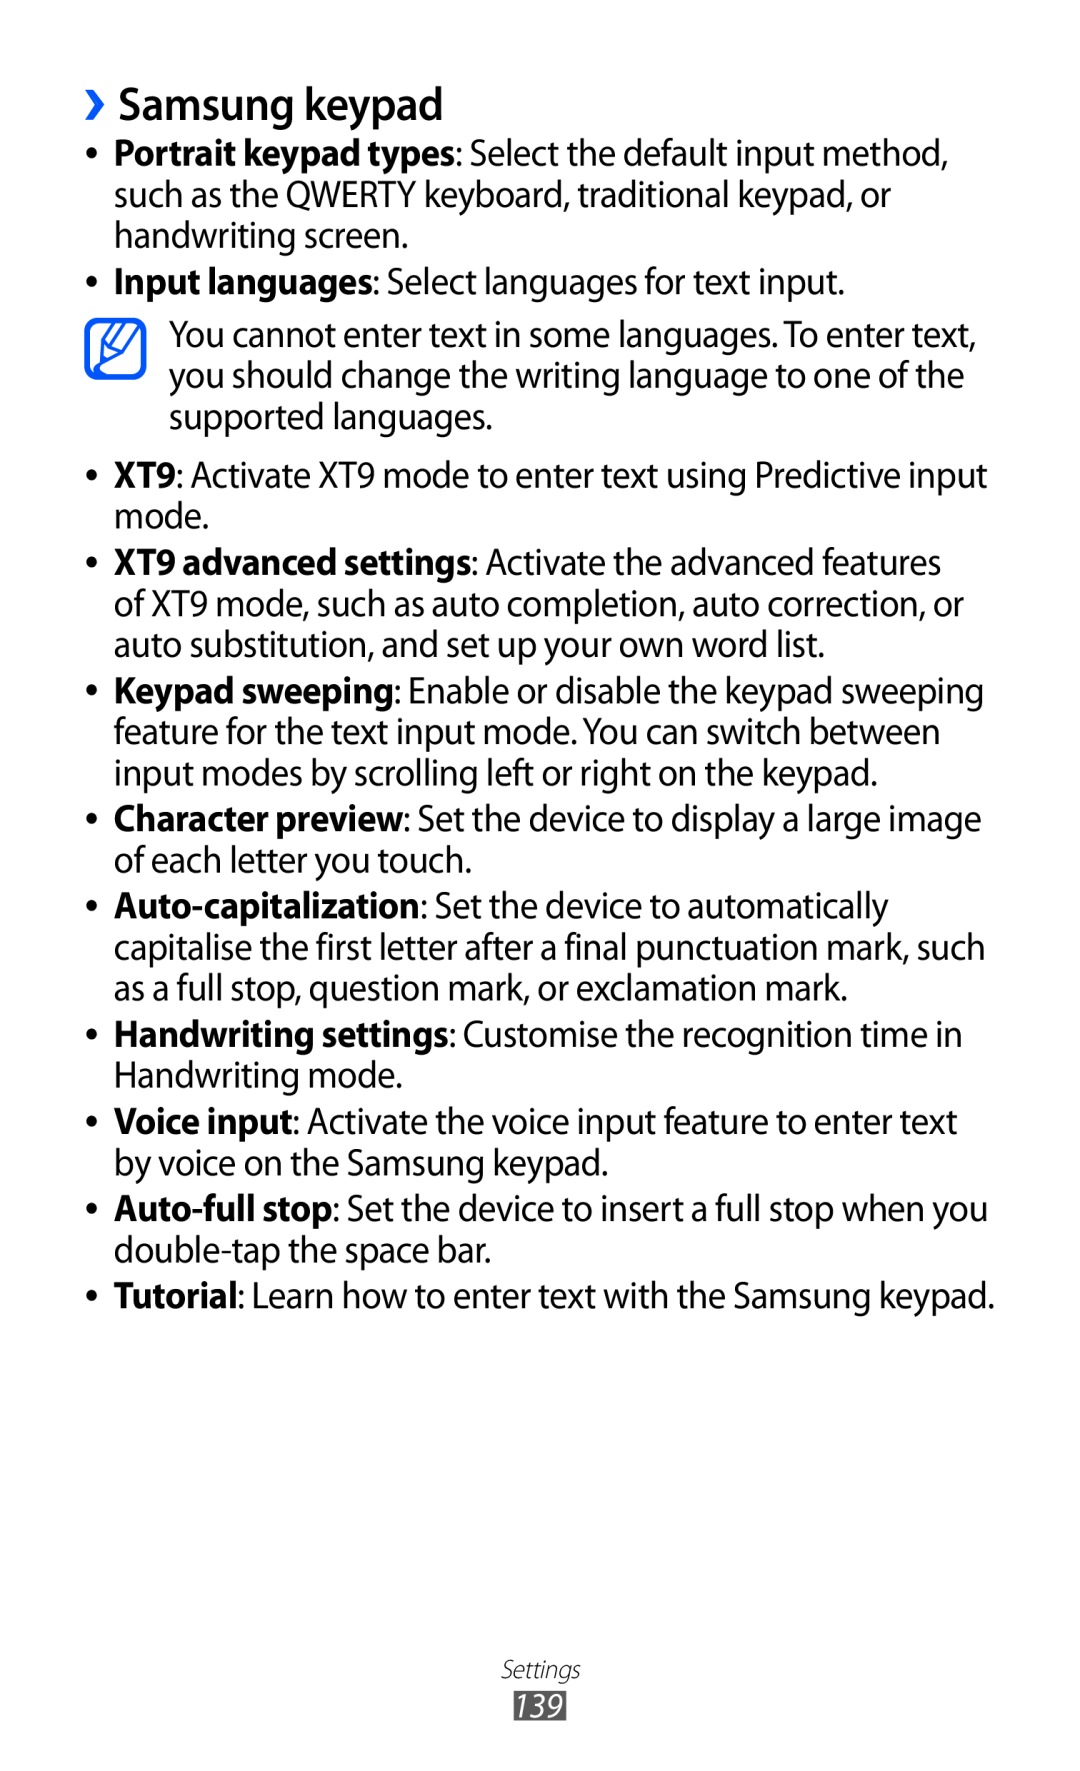 Samsung GT-I9070 user manual ››Samsung keypad 